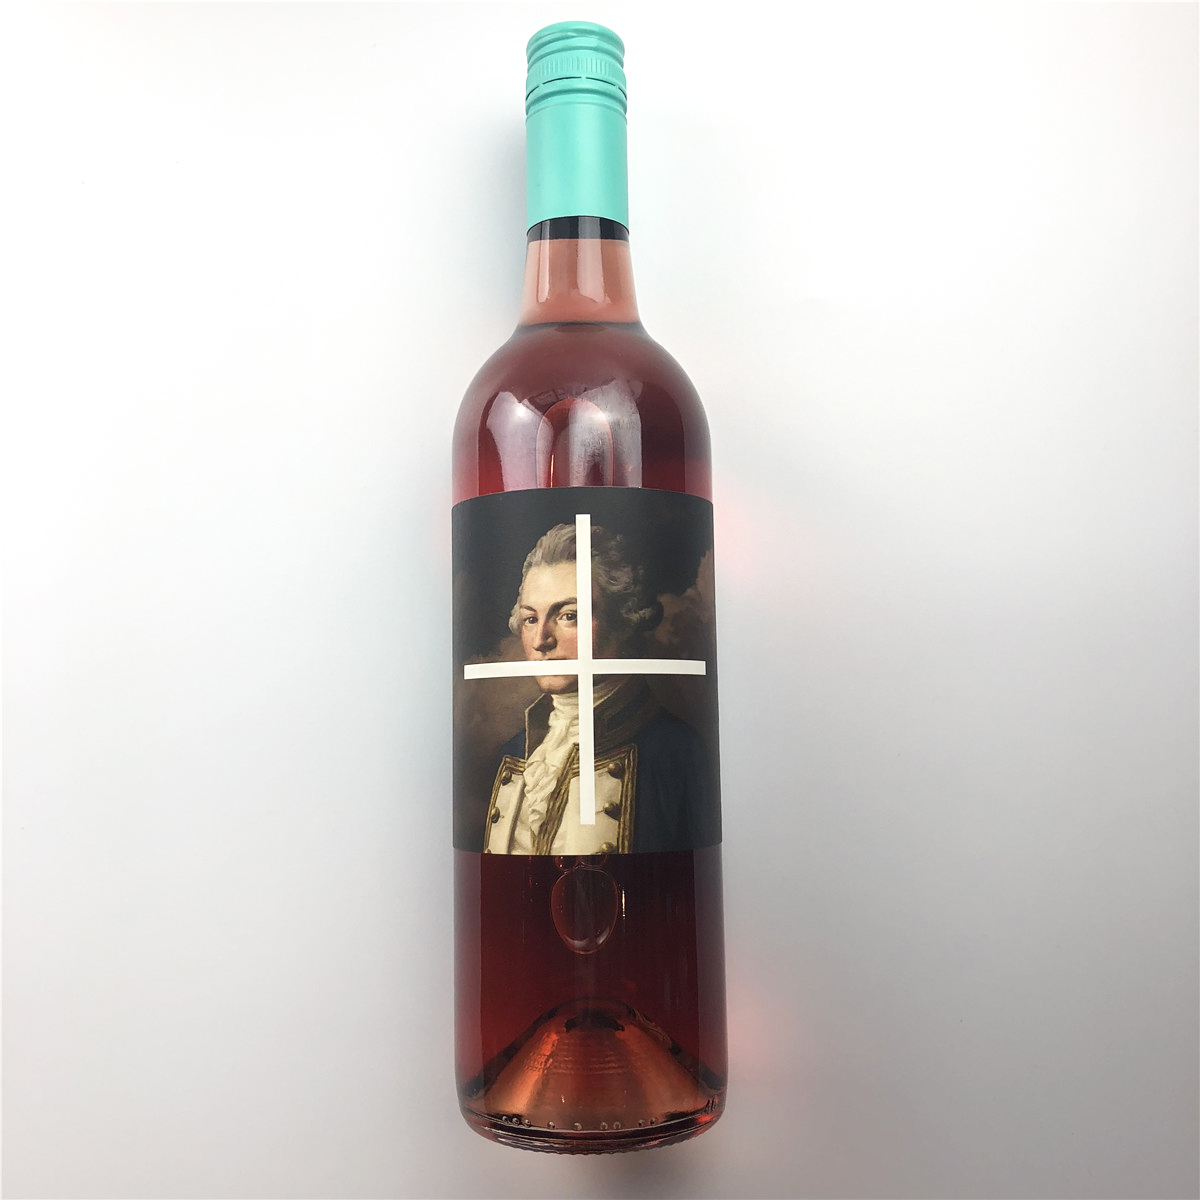 澳大利亚麦克拉伦谷产区澳爵酒庄黑达沃拉艾格尼科赤马五星酒庄桃红葡萄酒